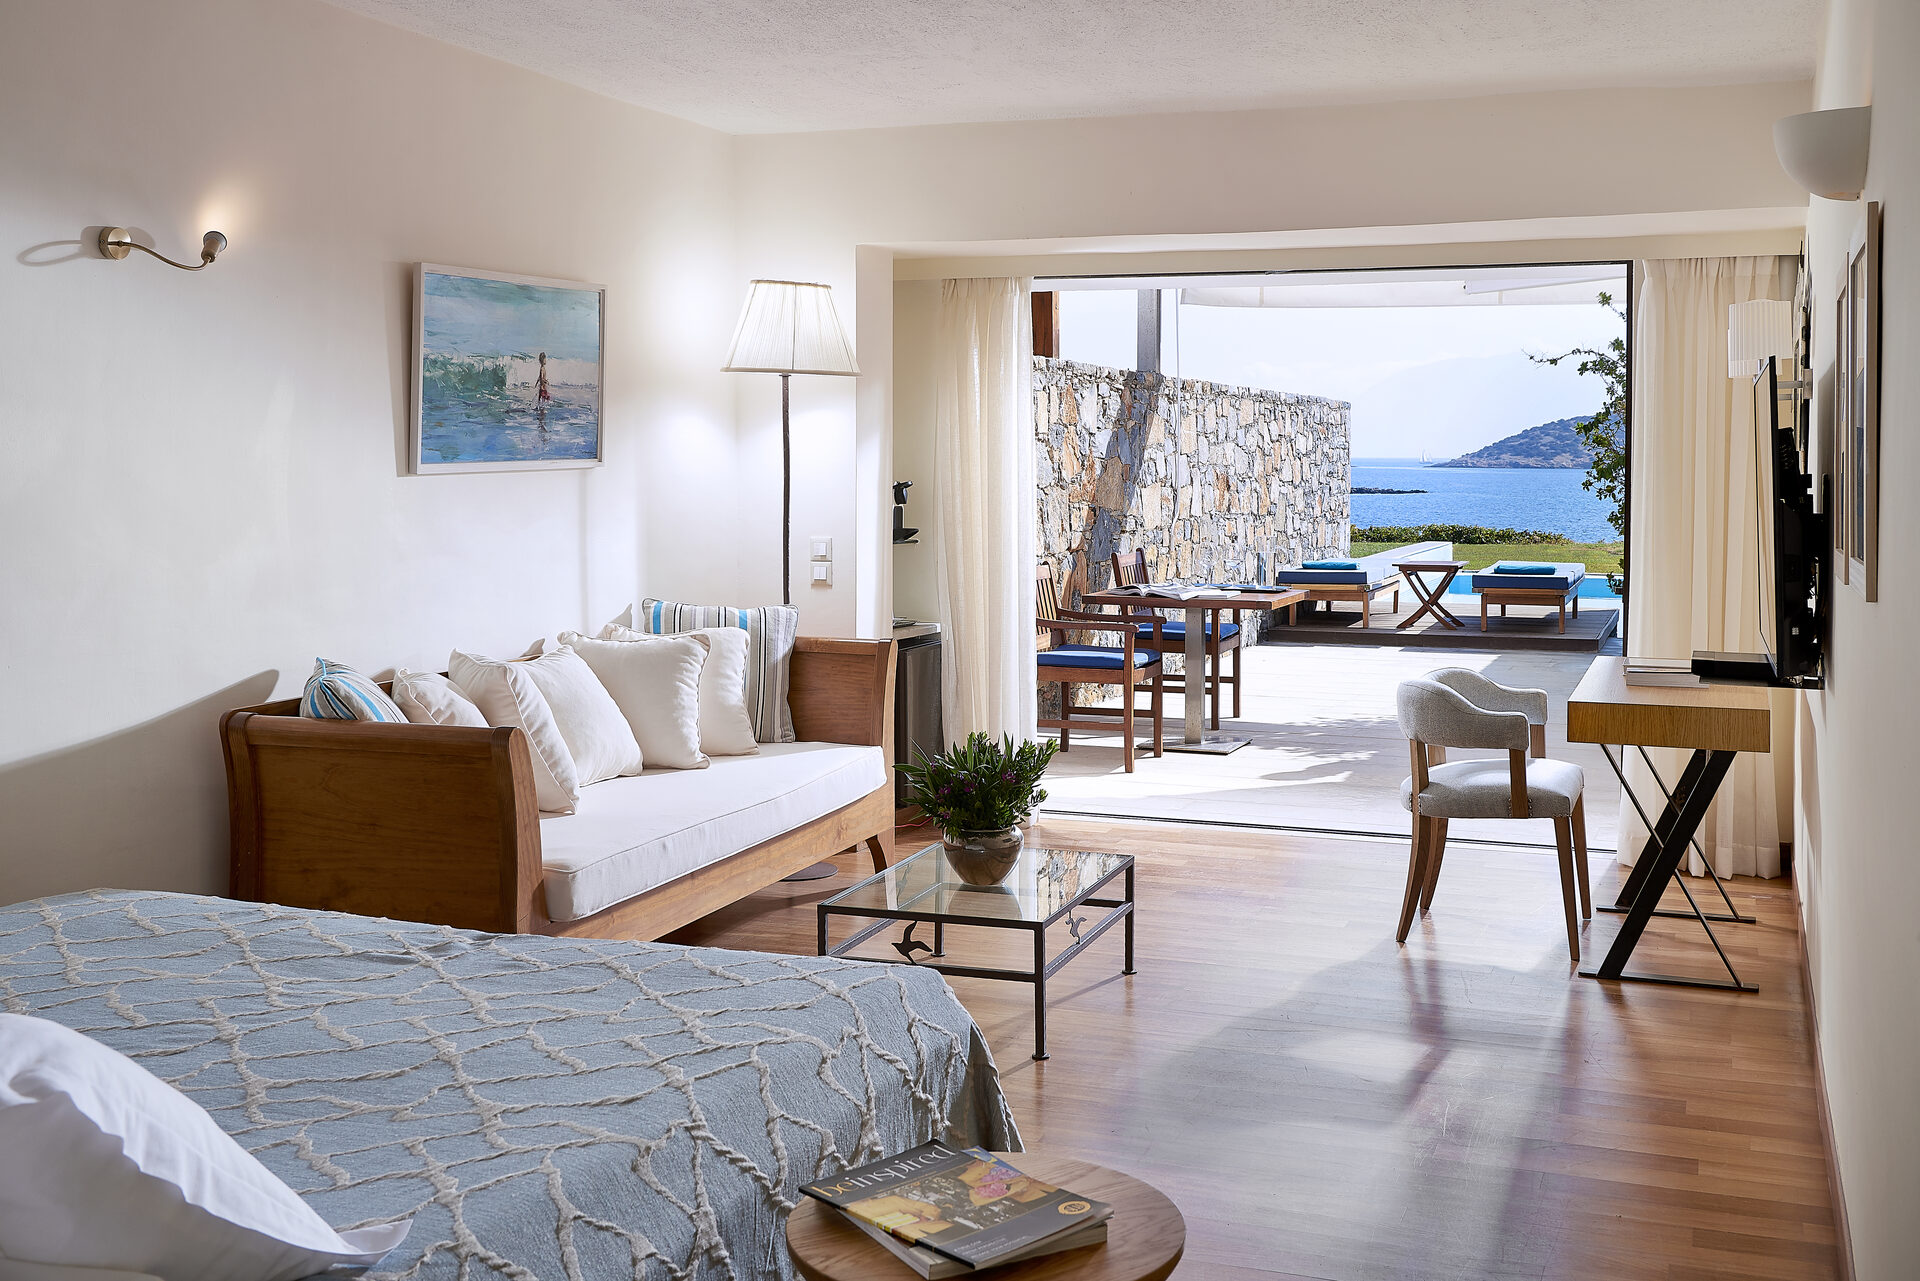 St. Nicolas Bay Resort Hotel & Villas